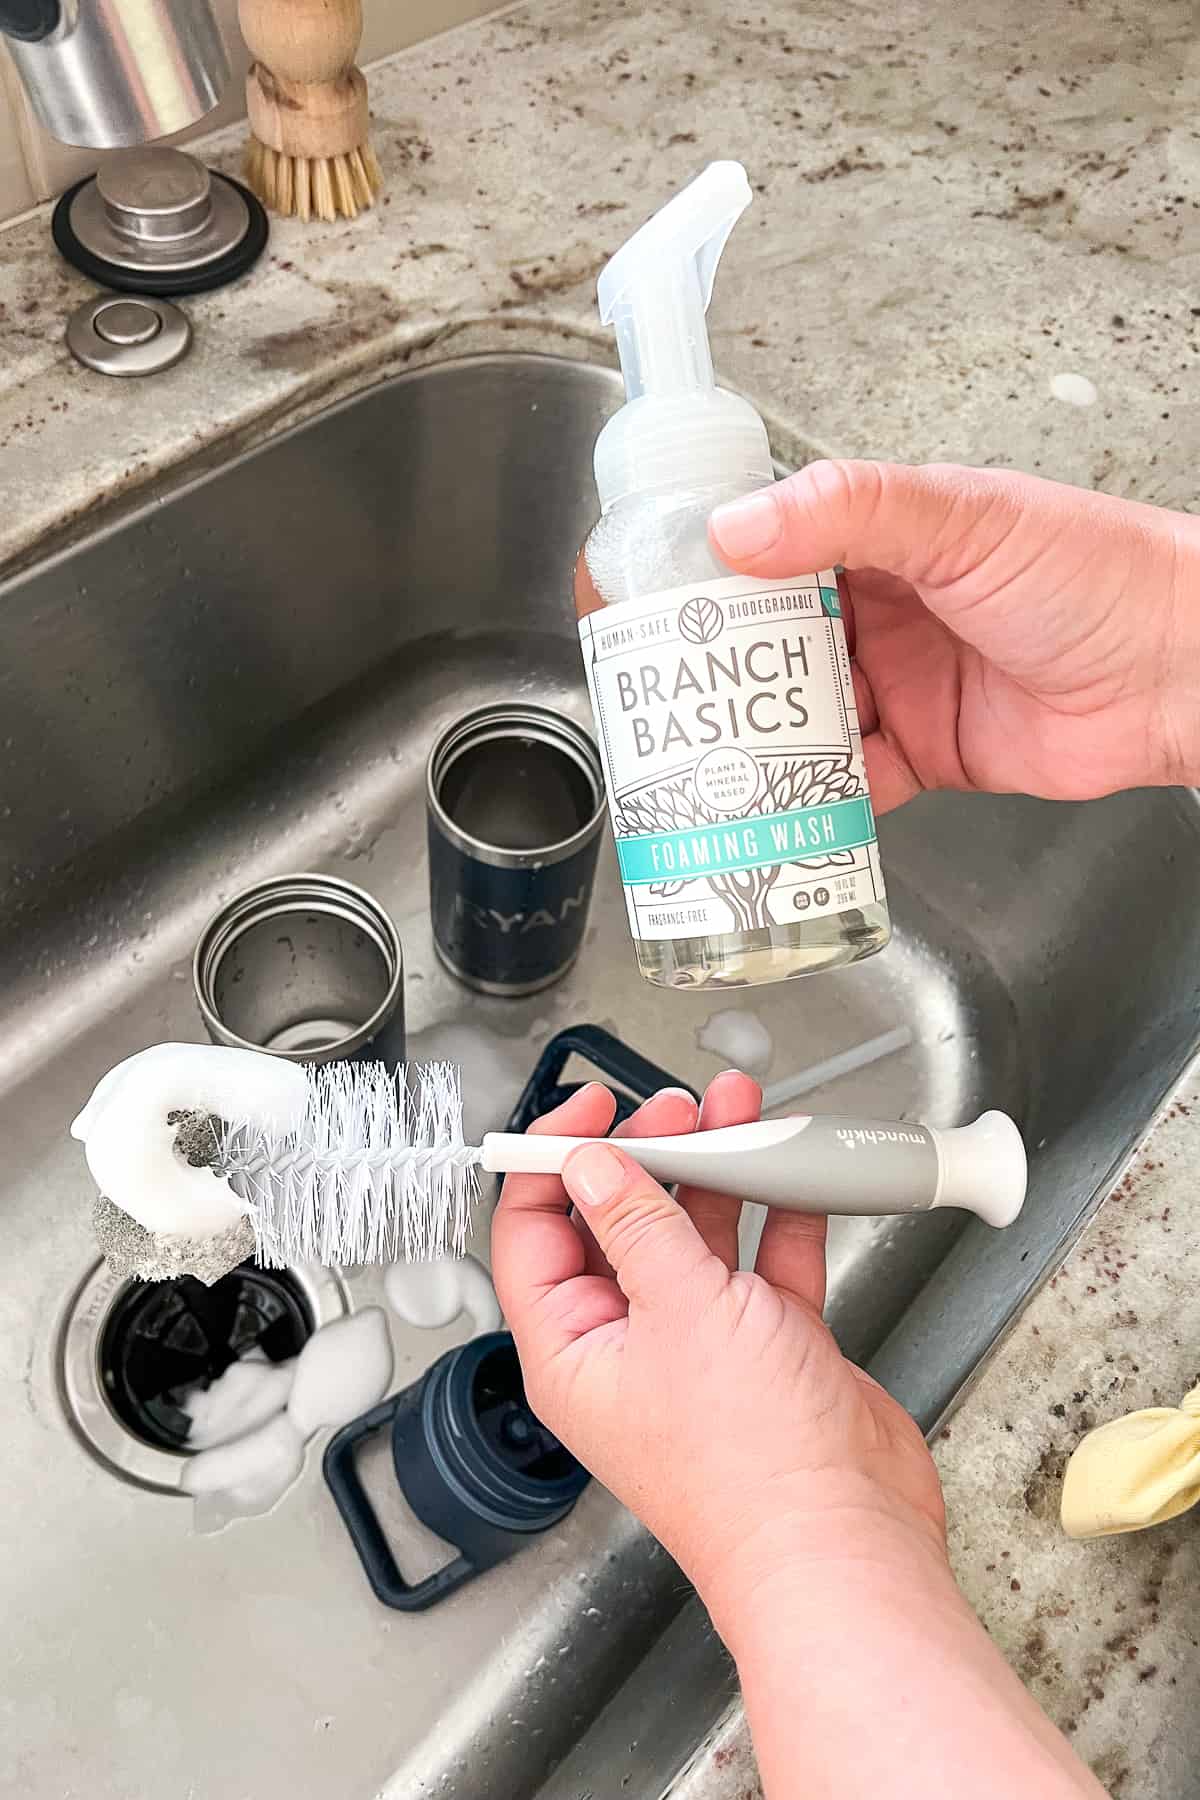 şişe fırçasına köpük sabun ekleme